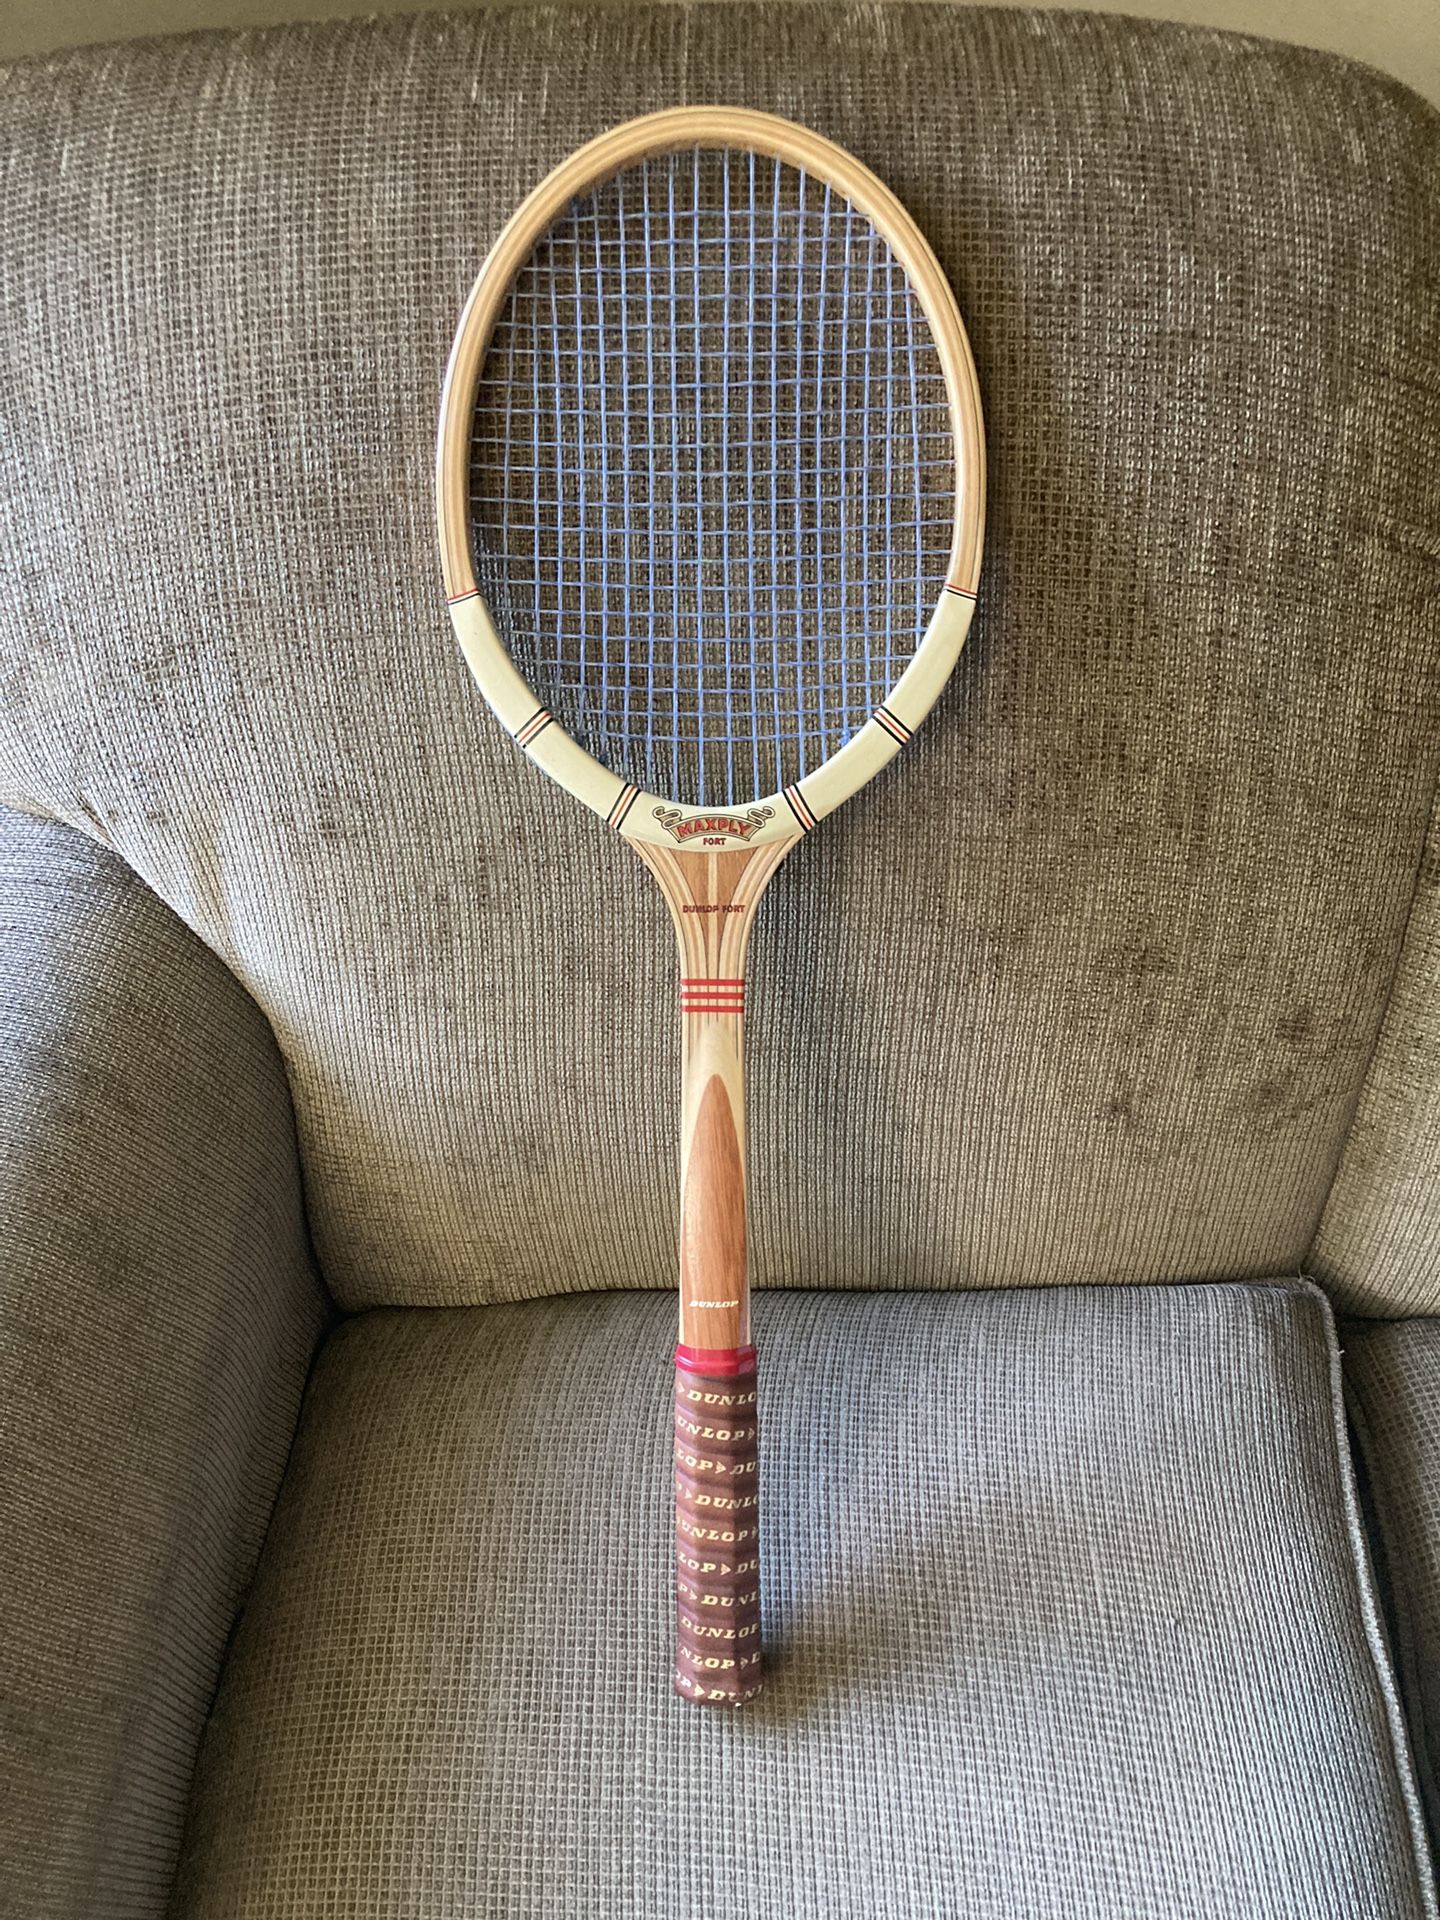 Vintage Dunlop Maxfly Tennis Racquet 